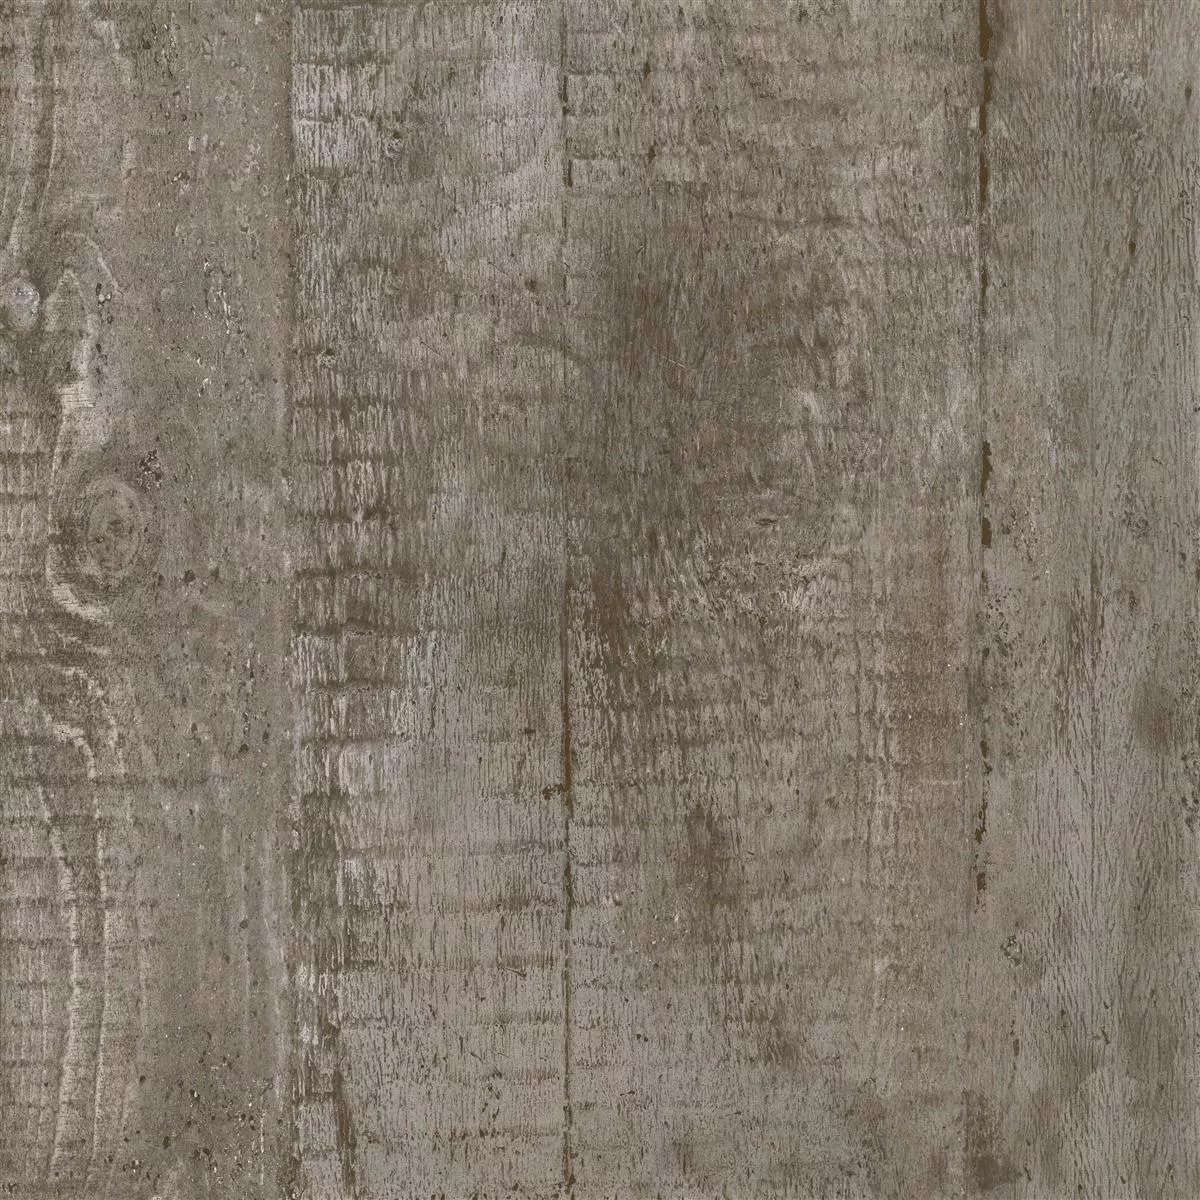 Próbka Płytki Podłogowe Gorki Wygląd Drewna 60x60cm Oszklony Brązowy